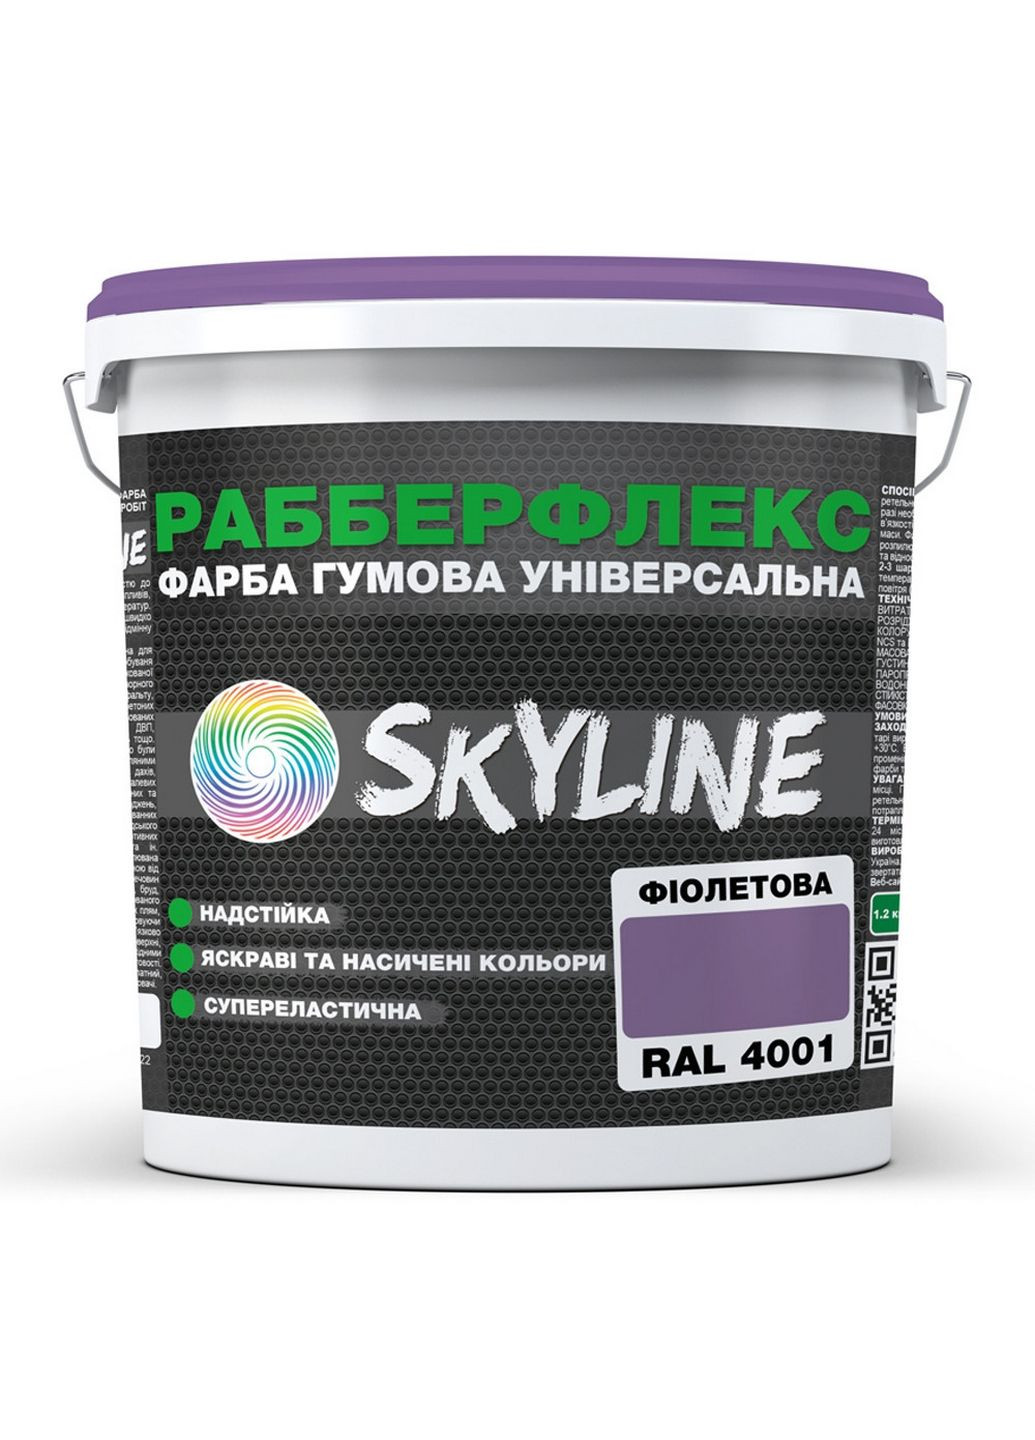 Краска резиновая суперэластичная сверхустойчивая «РабберФлекс» Фиолетовая RAL 4001 3,6 кг SkyLine (283327770)